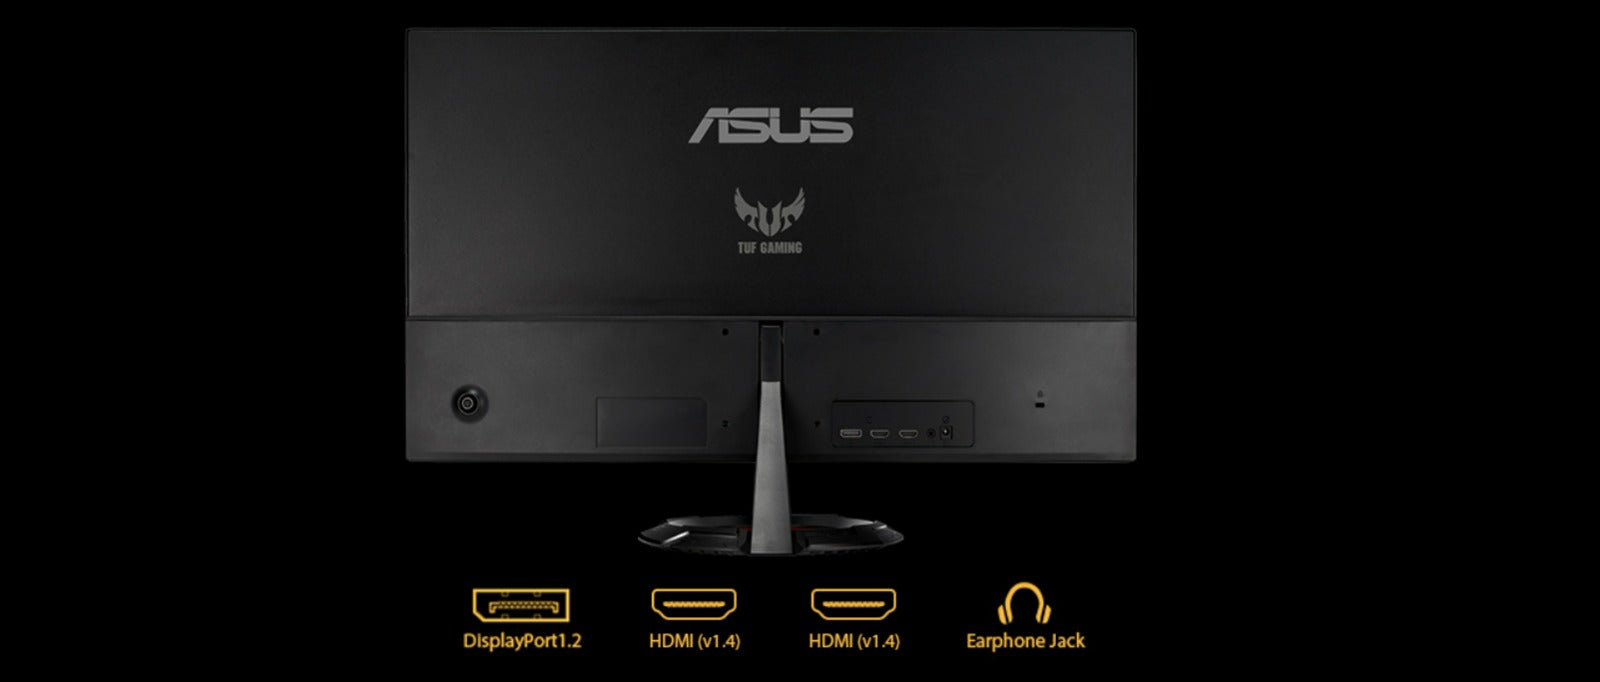 Asus TUF Gaming VG249Q1R, 23.8